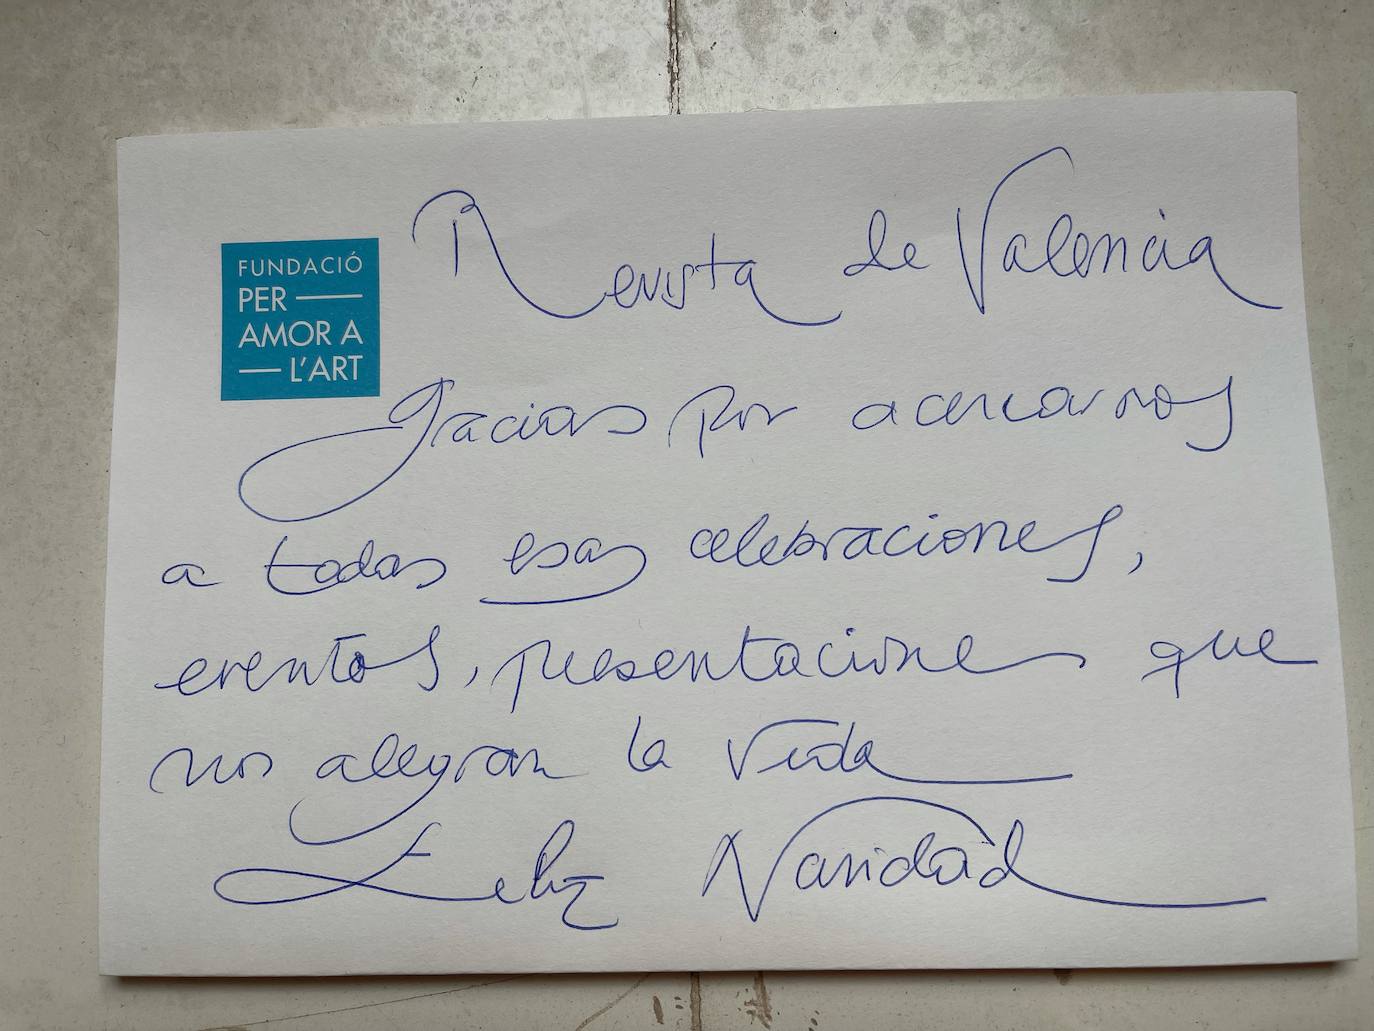 Al frente de la fundación Per Amor a l’Art junto a su marido, Susana Lloret es una de nuestras grandes anfitrionas de Valencia.